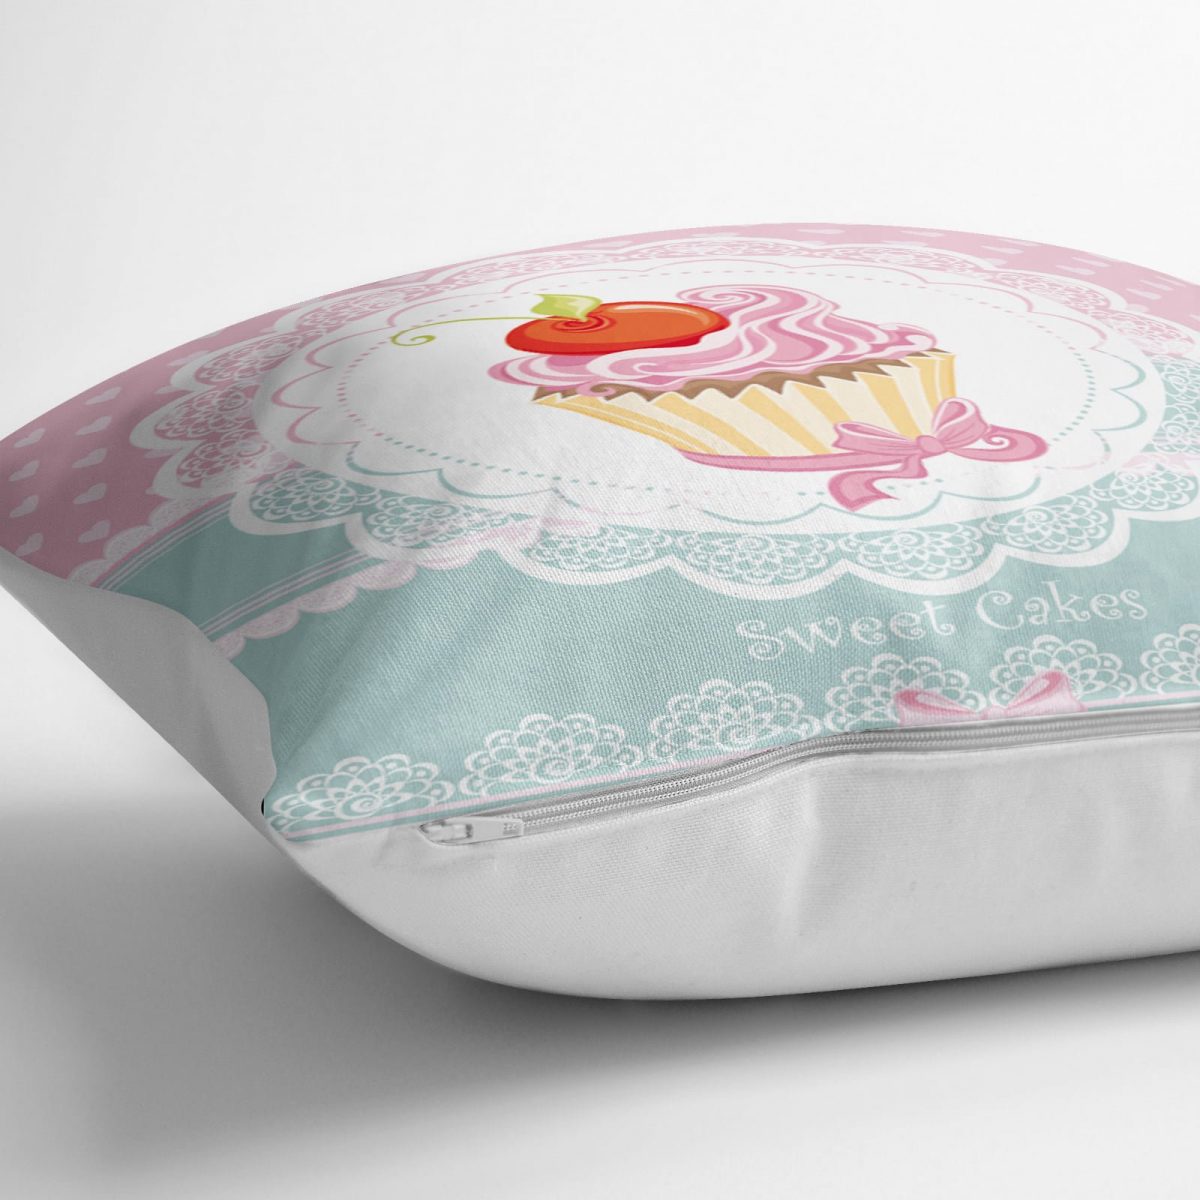 Cup Cake Dijital Baskılı Dekoratif Yer Minderi - 70 x 70 cm Realhomes